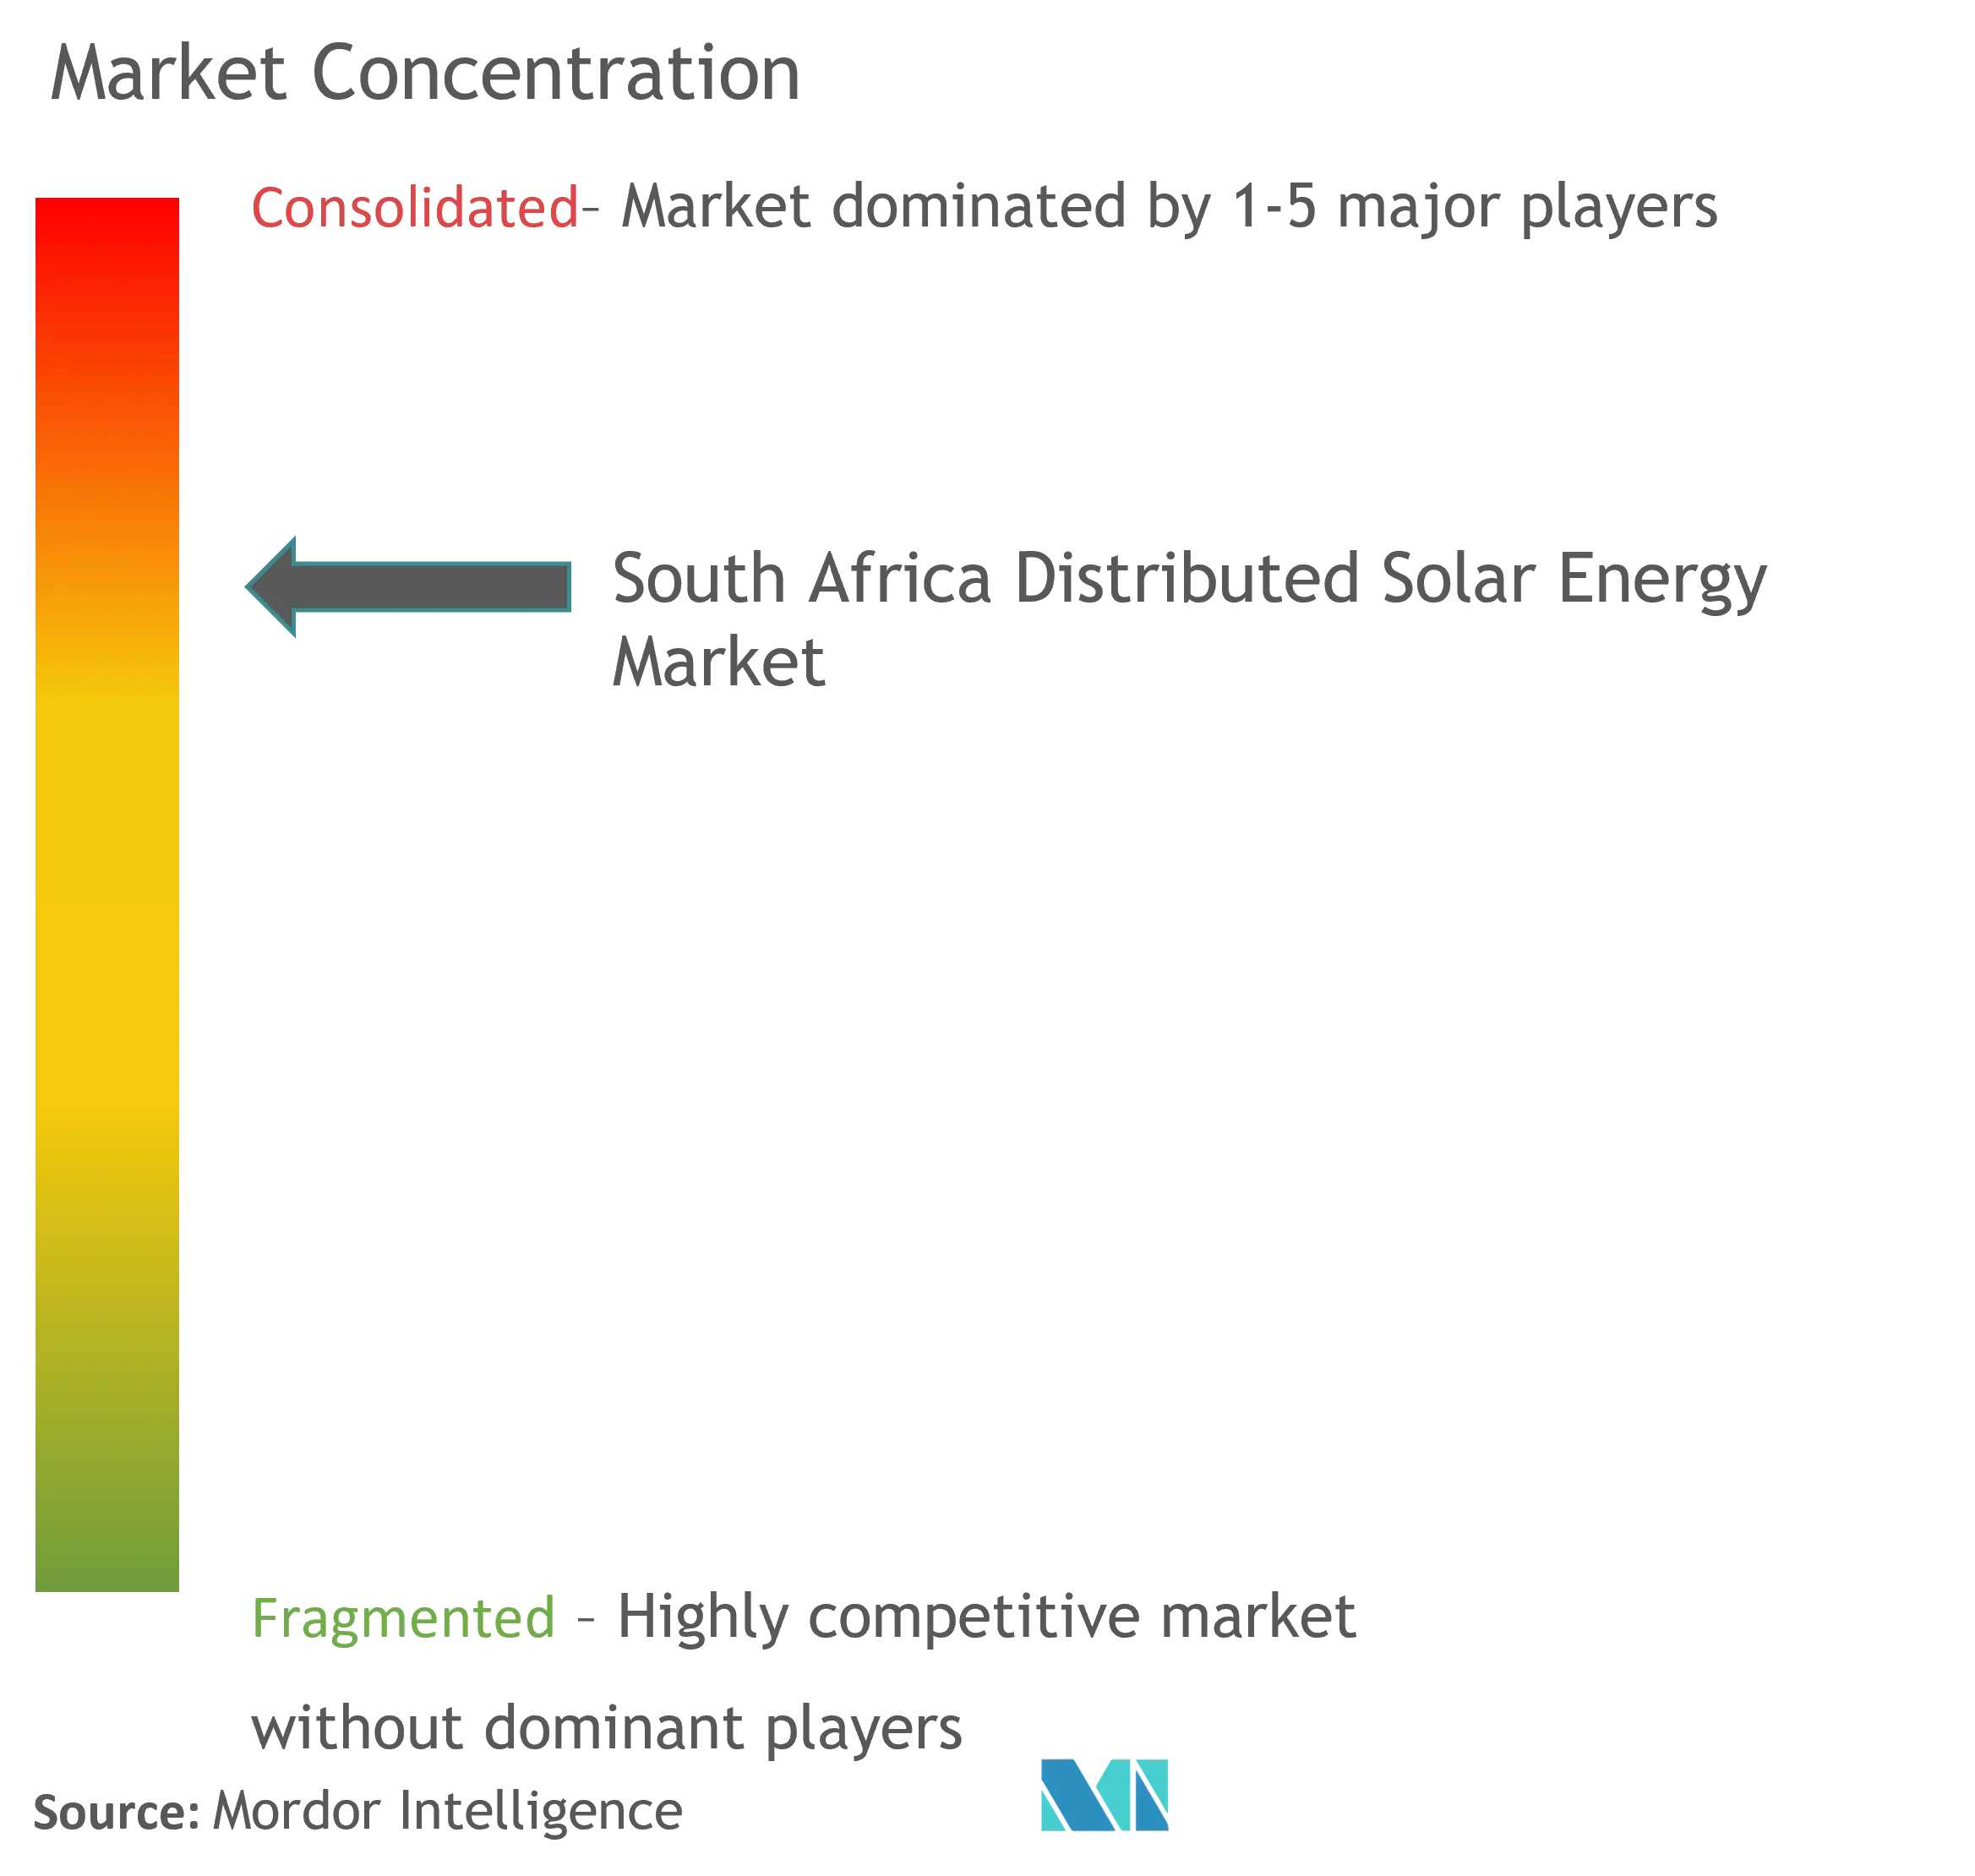 Concentration du marché de lénergie solaire distribuée en Afrique du Sud